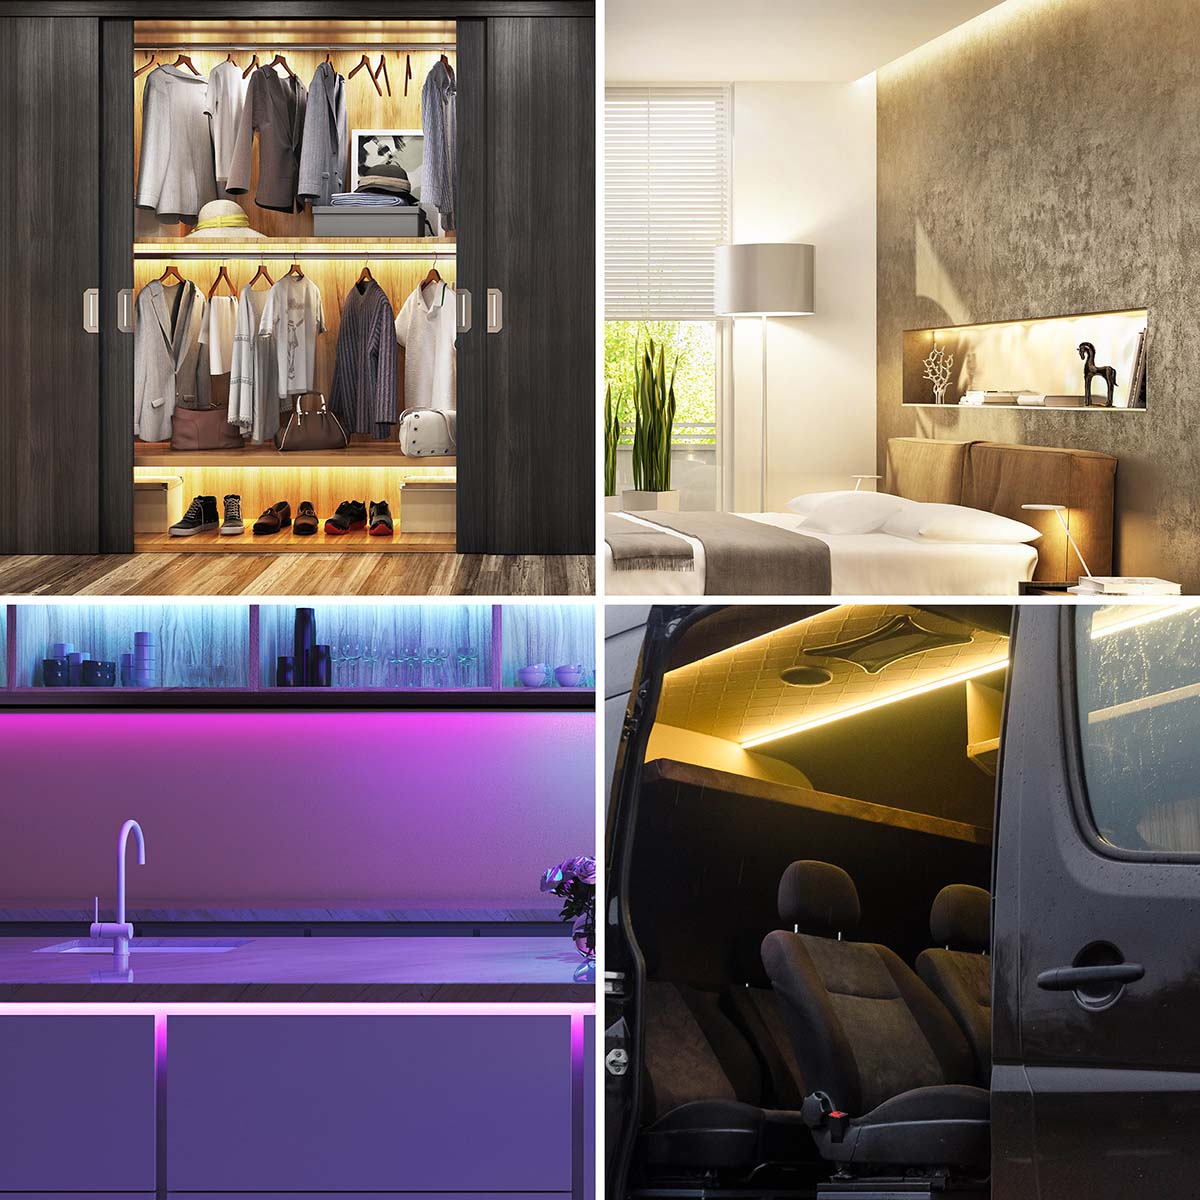 Luzes led rgbw fita maleável milhares de cores inteligente para diferentes usos cozinha carro quarto armario